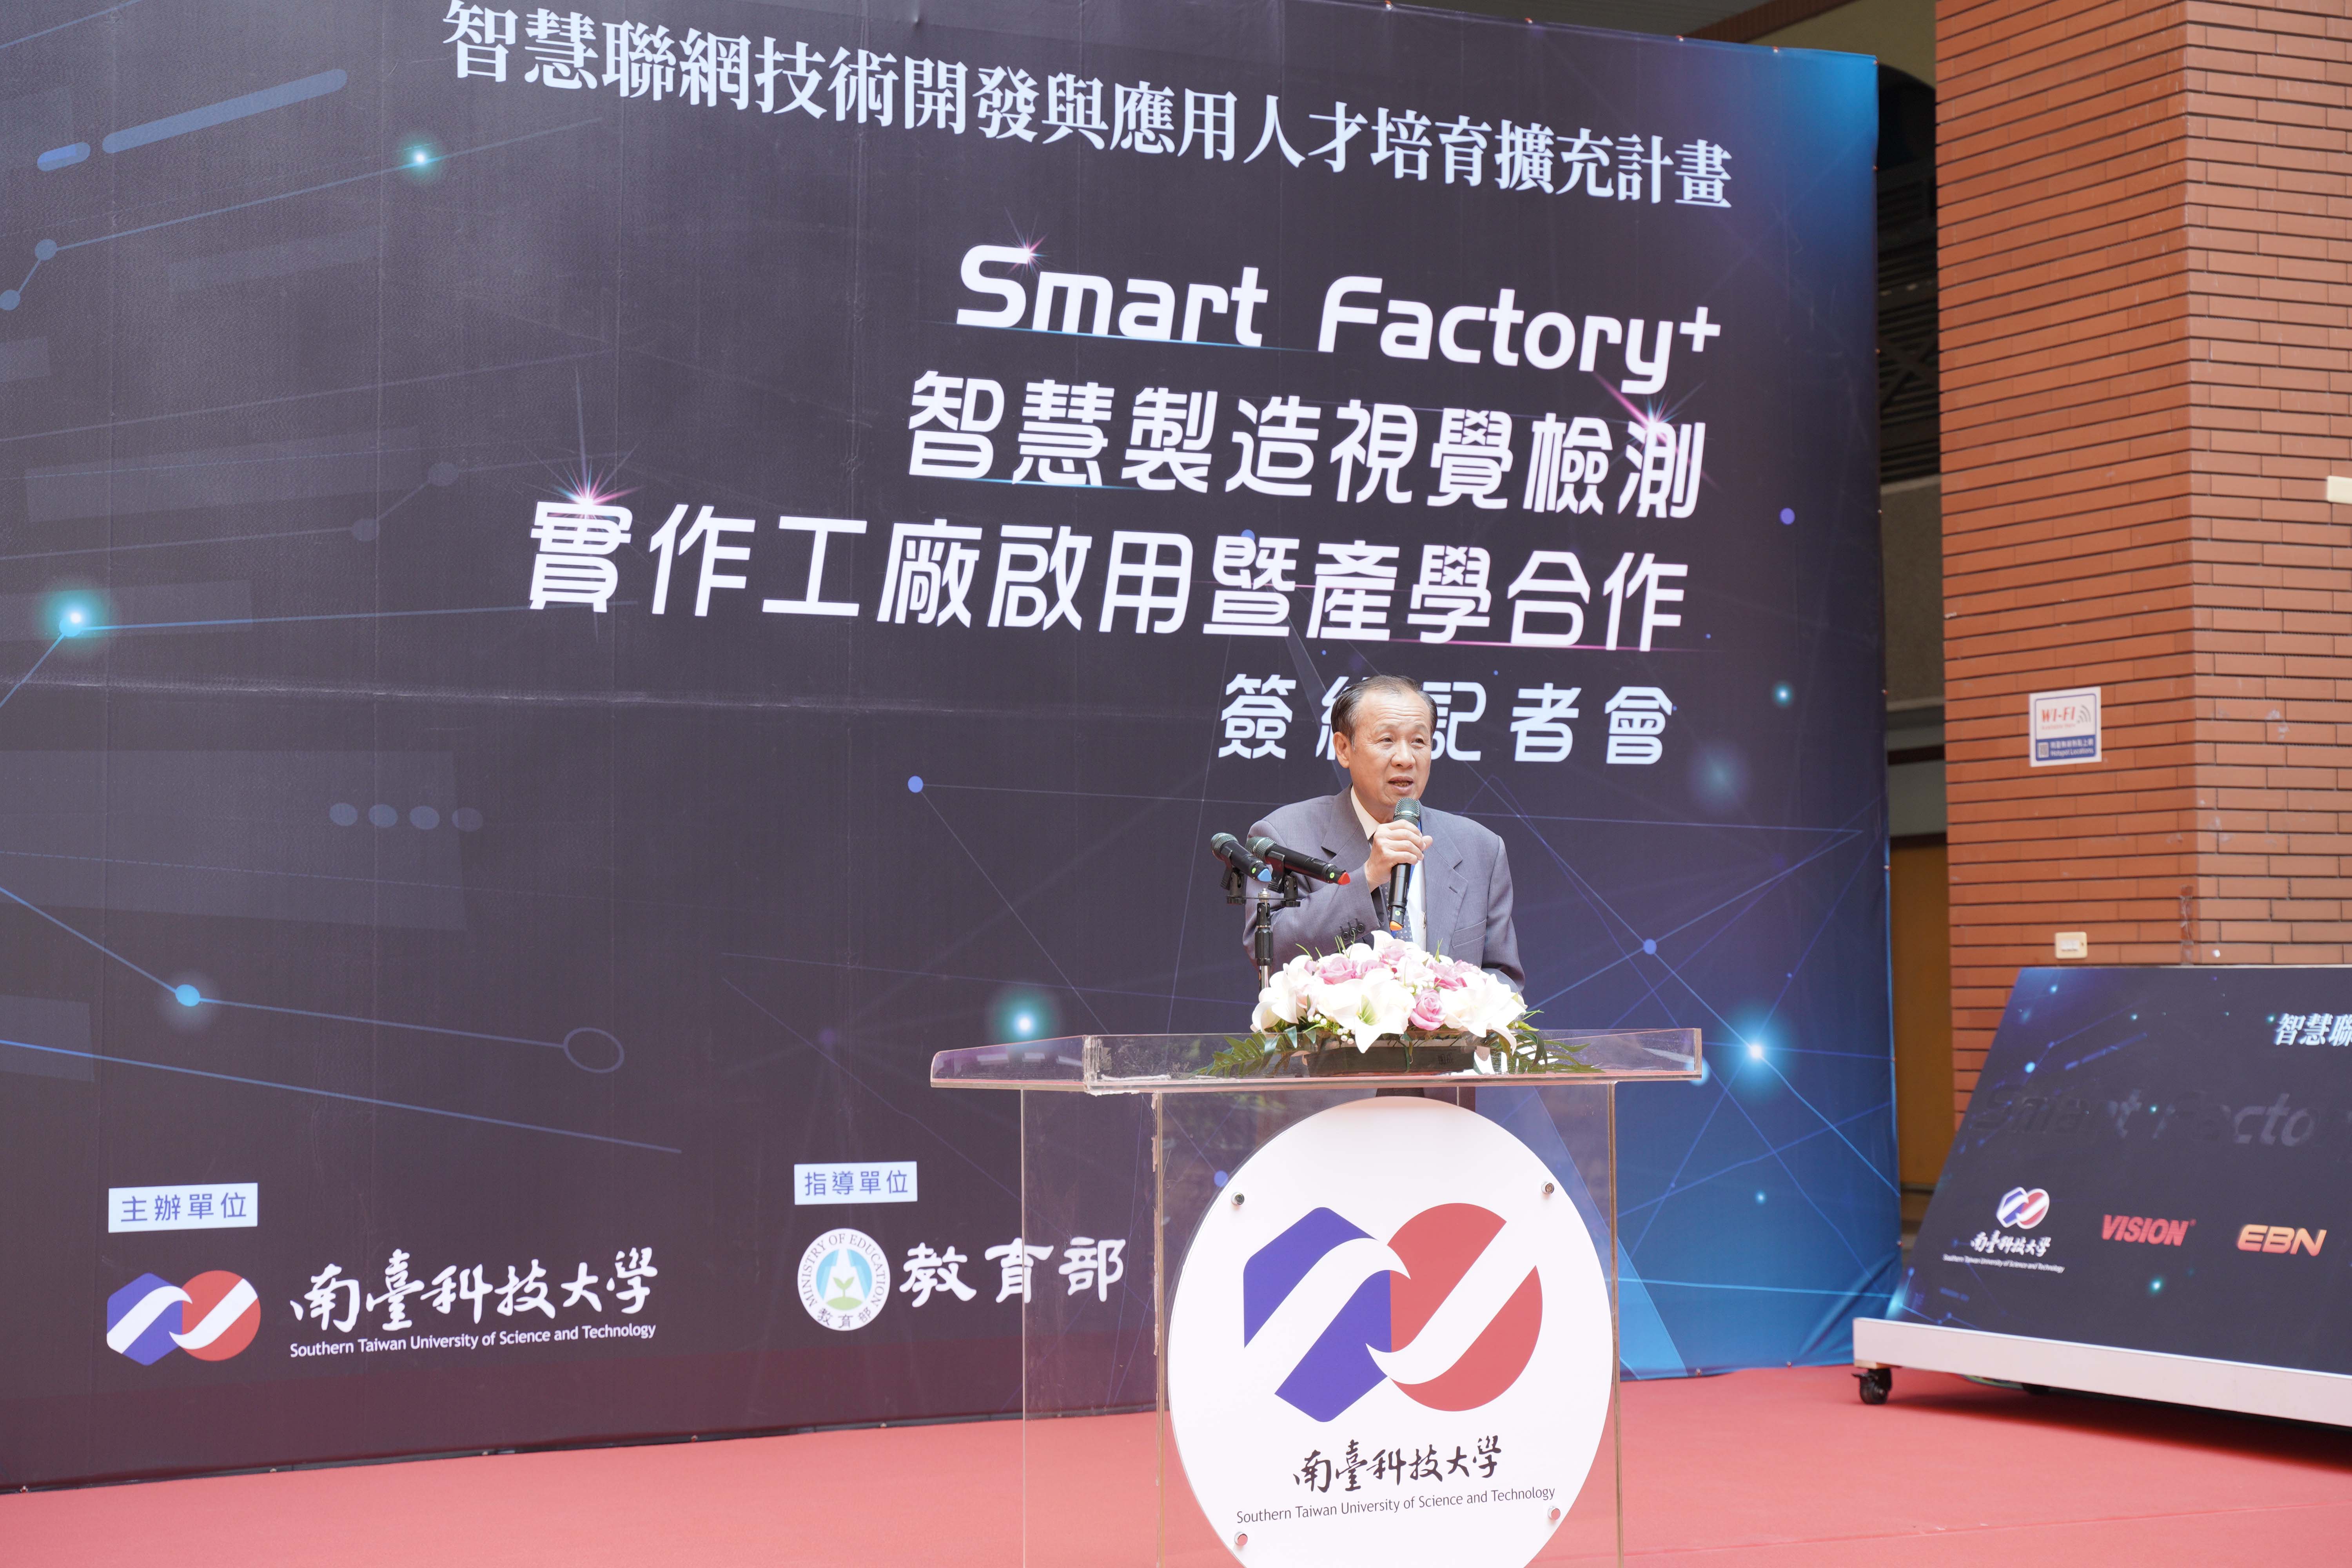 南臺科大與產業攜手打造「Smart Factory+智慧製造視覺檢測實作工廠」產學共研基地